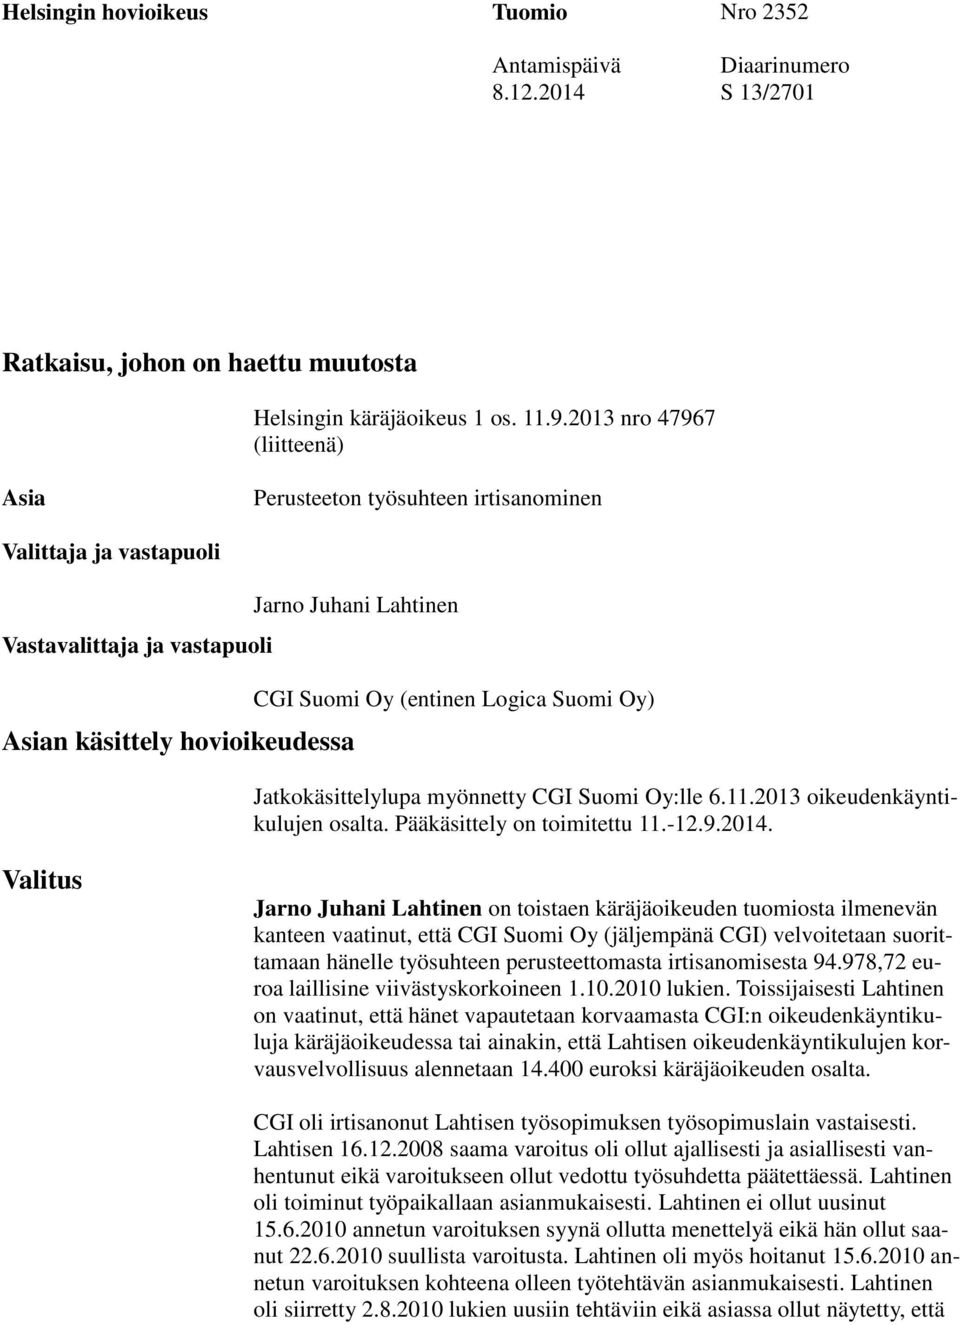 Logica Suomi Oy) Jatkokäsittelylupa myönnetty CGI Suomi Oy:lle 6.11.2013 oikeudenkäyntikulujen osalta. Pääkäsittely on toimitettu 11.-12.9.2014.